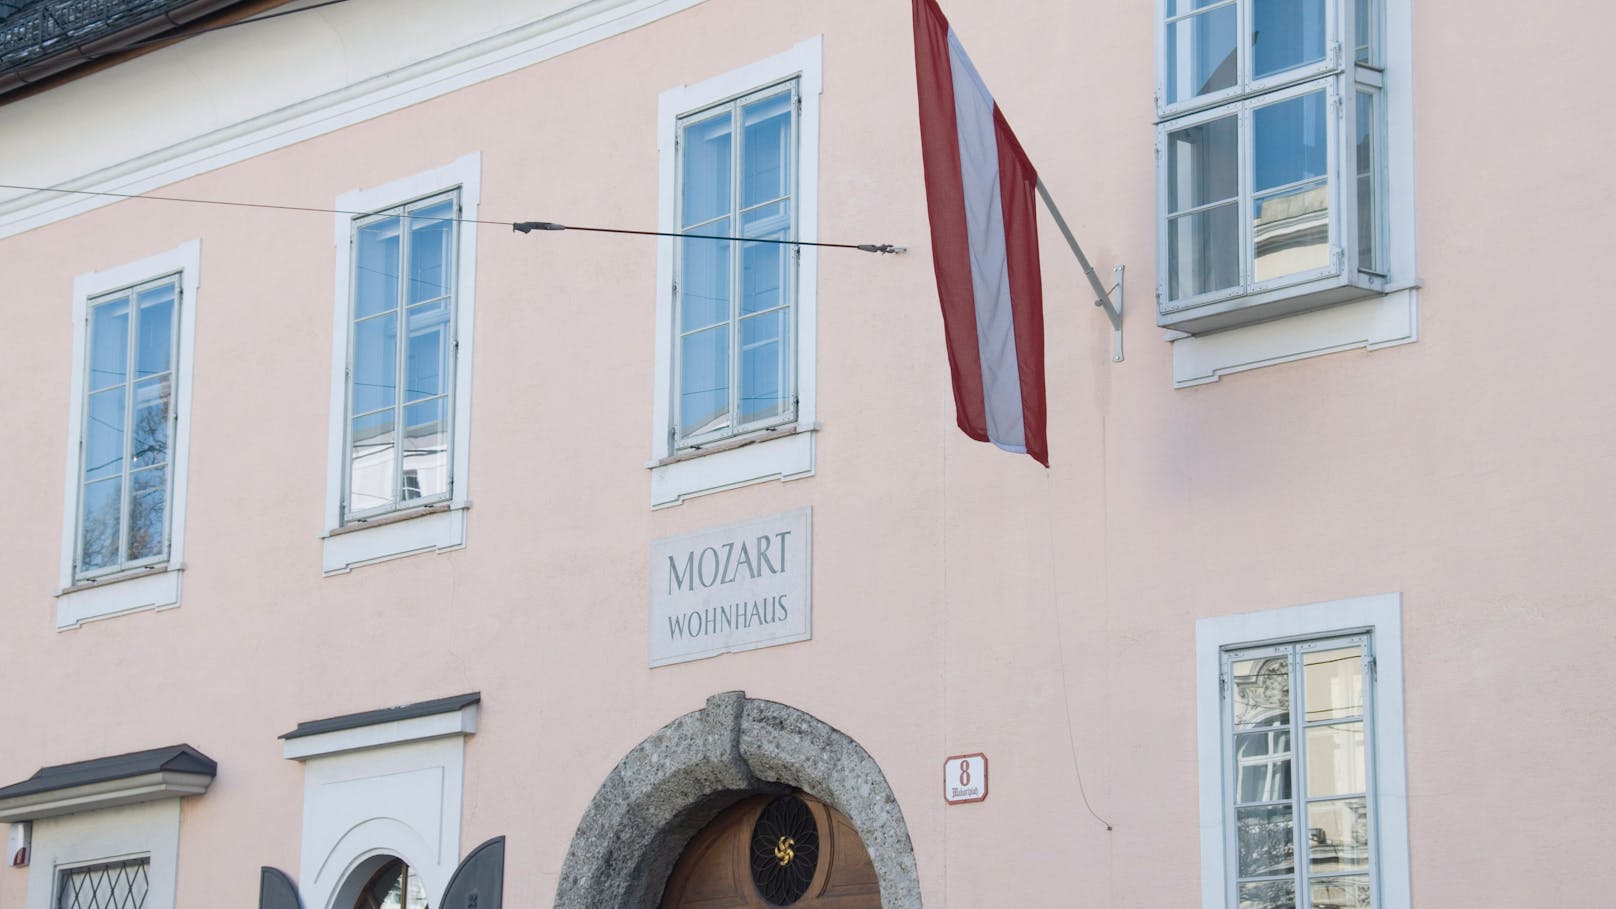 Mozart Wohnhaus am Makartplatz: In drei Metern Tiefe wurde ein verdächtiger Gegenstand entdeckt.